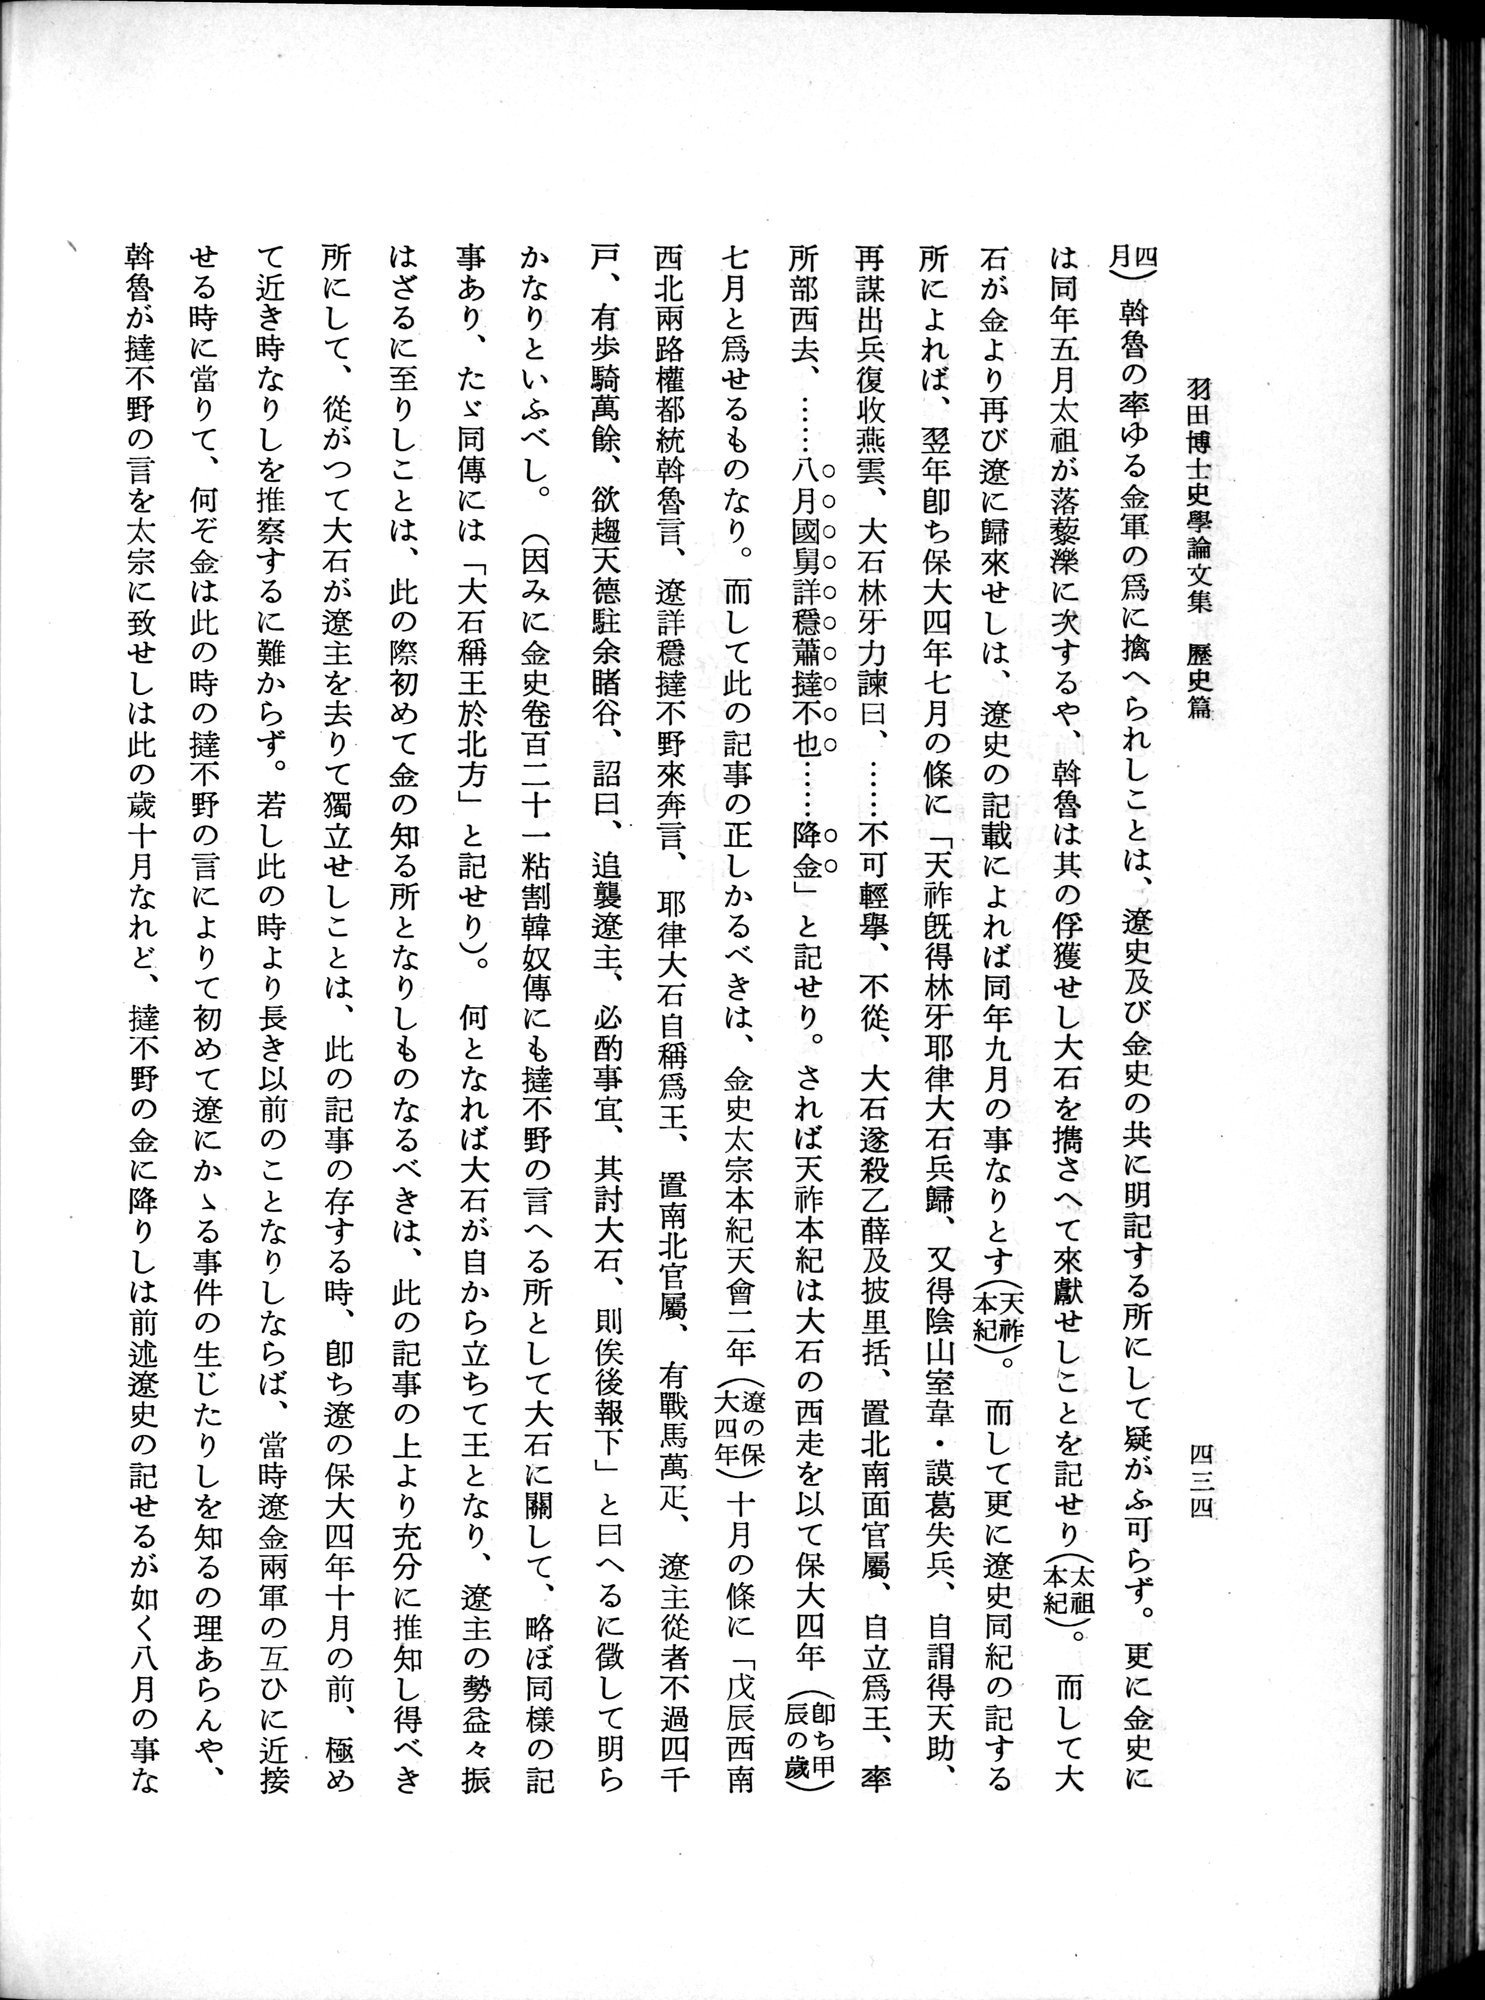 羽田博士史学論文集 : vol.1 / Page 472 (Grayscale High Resolution Image)